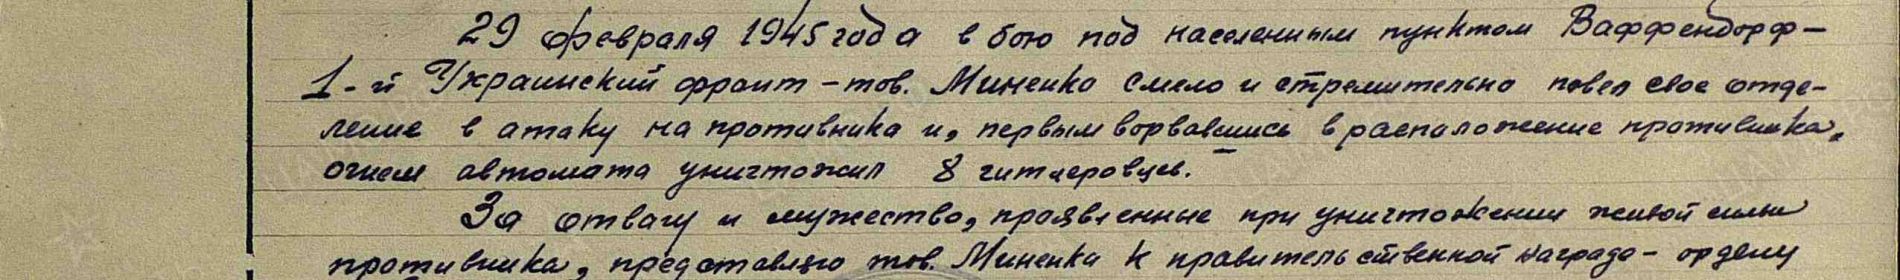 Приказ о награждении Орденом Красной Звезды от 28.02.1945